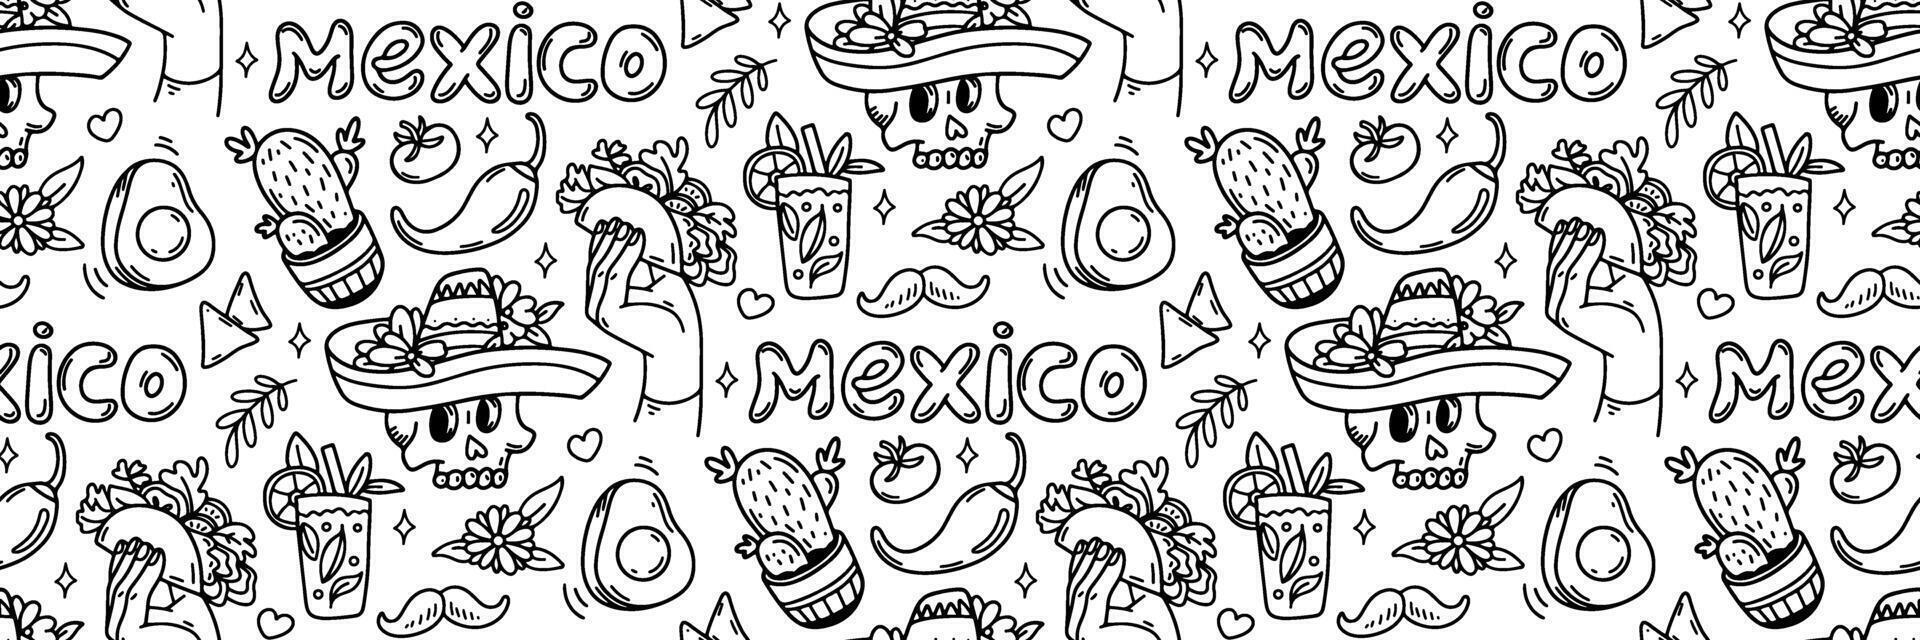 mexico klotter sömlös mönster. cinco de mayo firande bakgrund. mexikansk mat taco, avokado chili, tequila, sombrero skalle och Övrig kultur element. för tapet eller tyg. illustration vektor